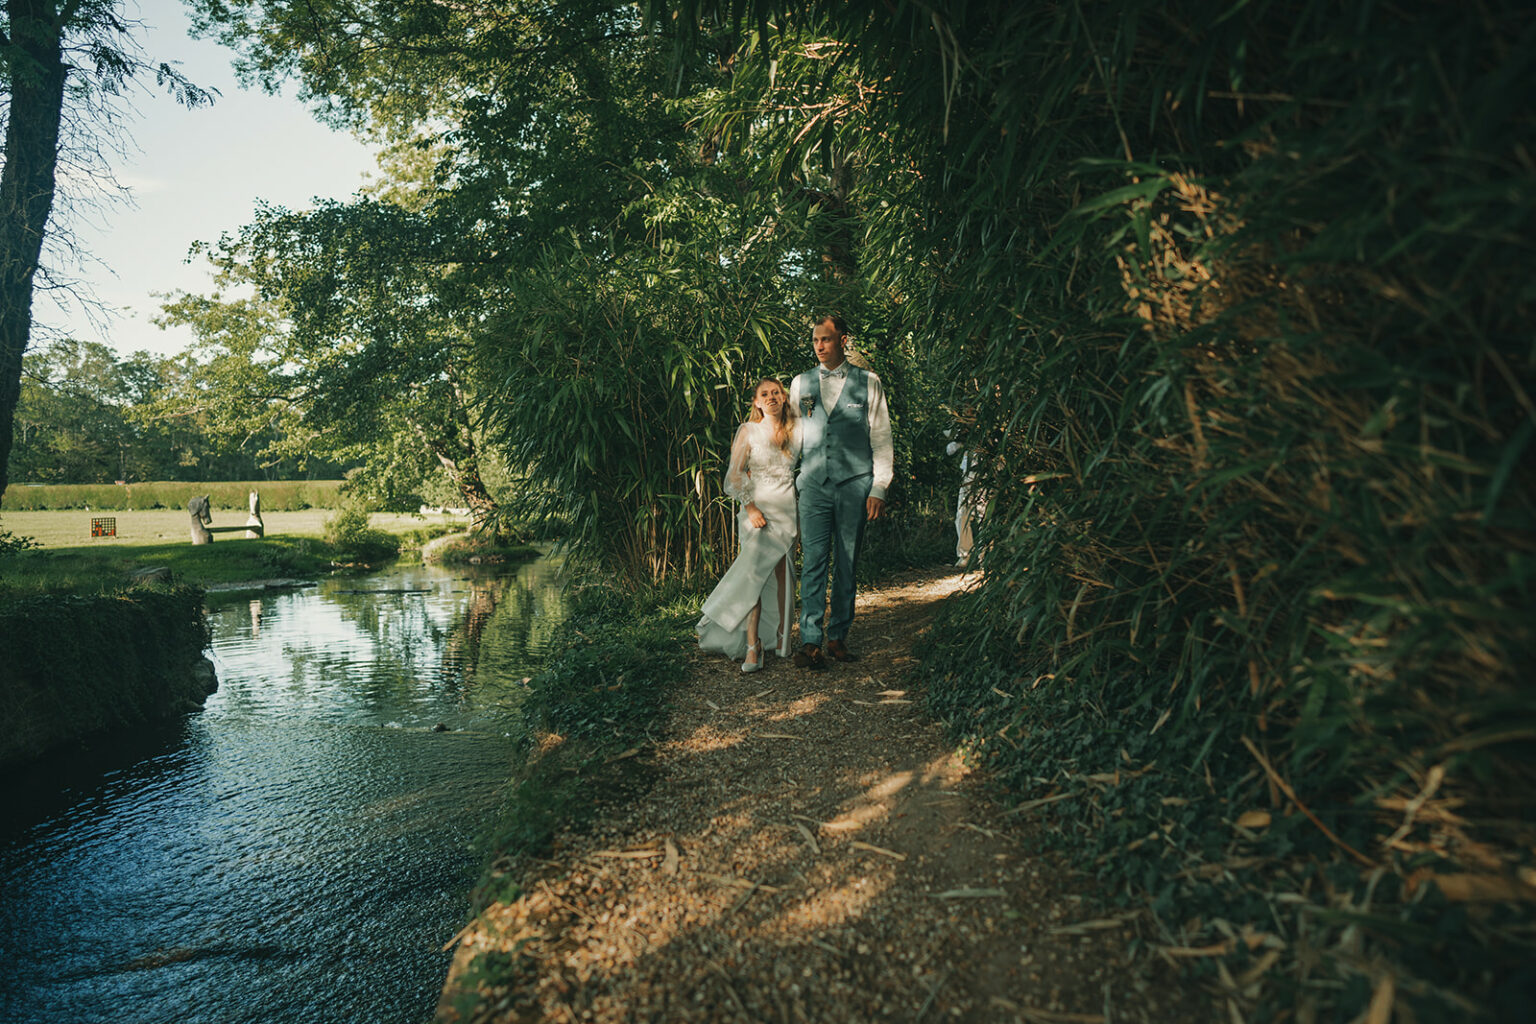 le mariage Fany et Jérémie au moulin des cherottes dans l'Eure au bord de l'Iton par Alain Leprévost photographe vidéaste de mariage en Normandie